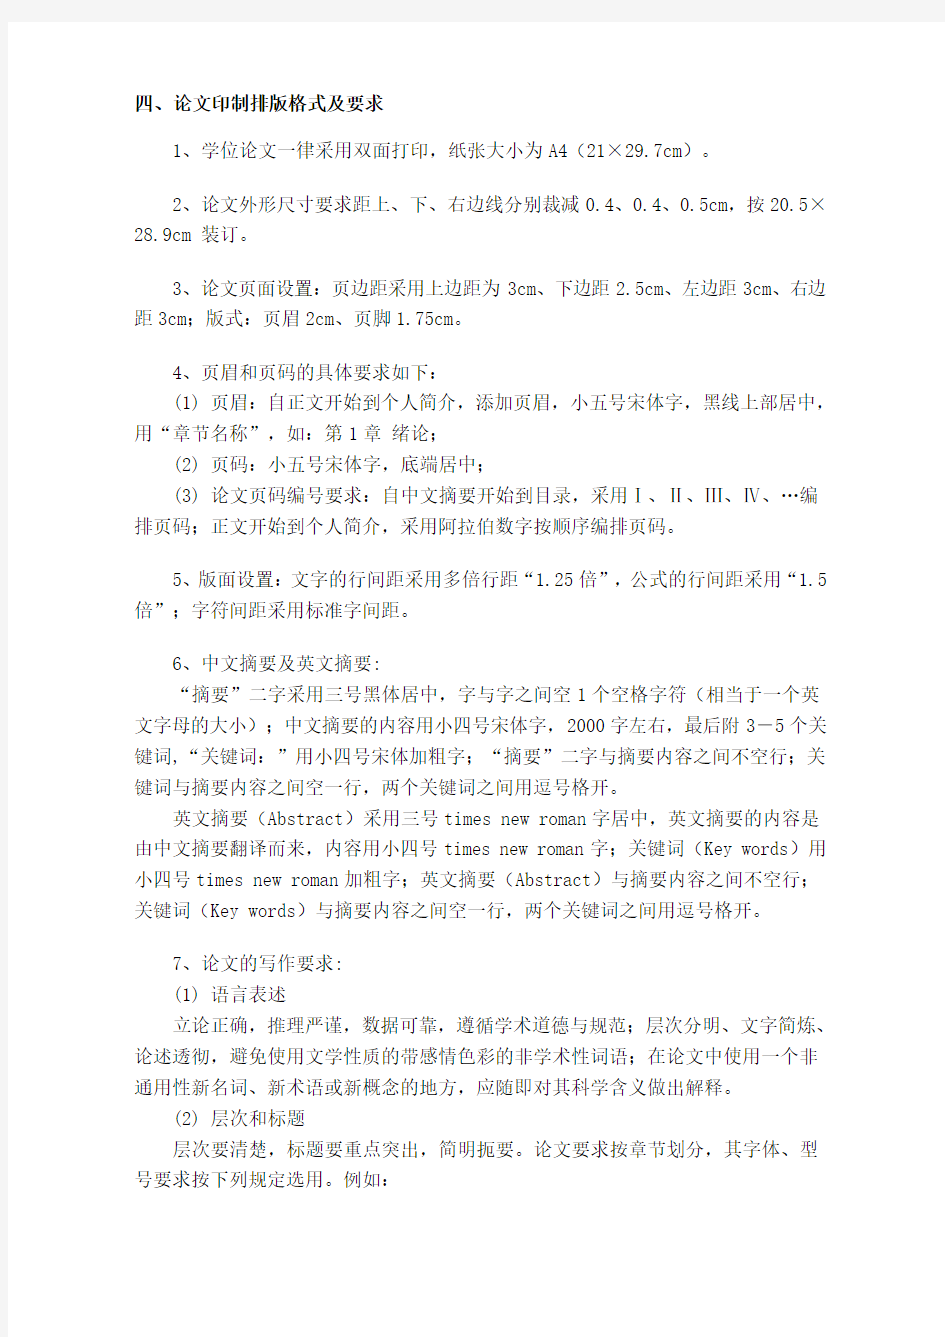 长江大学硕士学位论文排版格式要求及扉页样式2014102